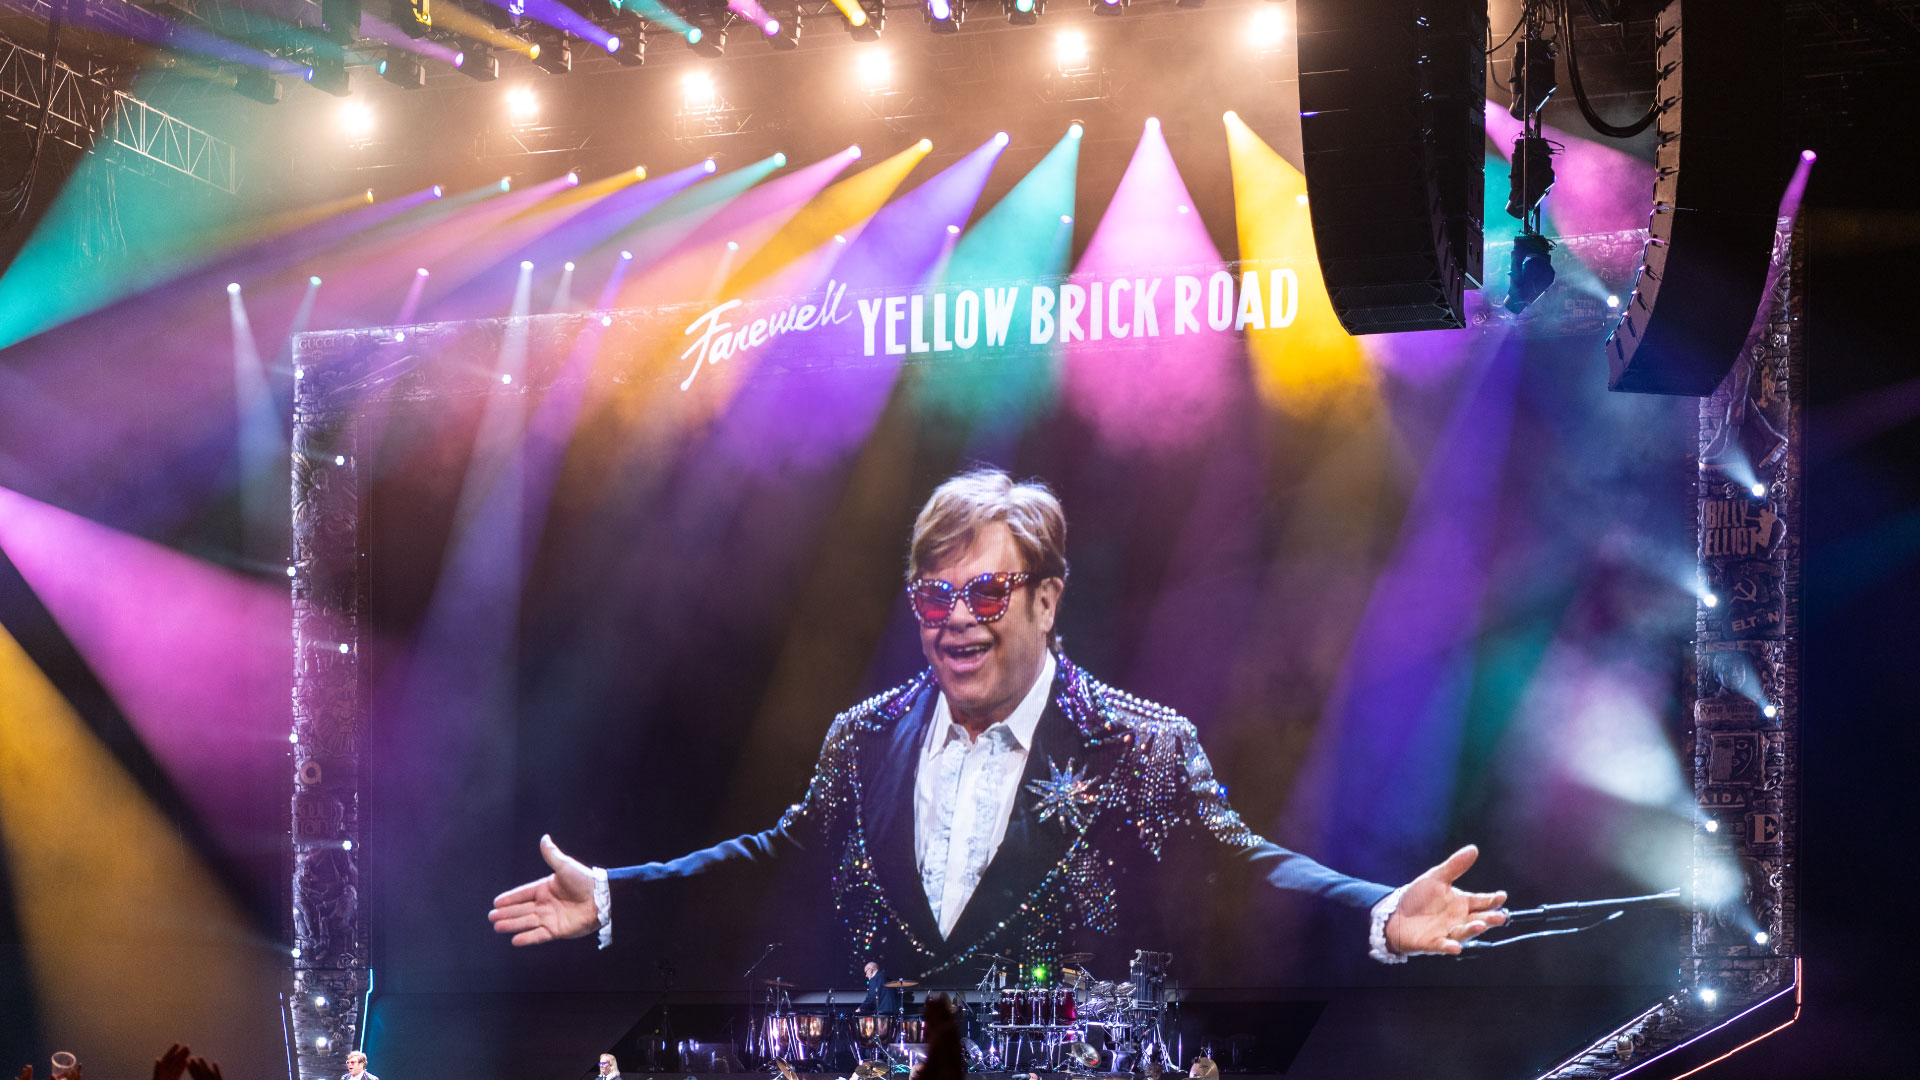 PRG a l'honneur de travailler avec la merveilleuse équipe d'Elton John, en fournissant l'éclairage et le gréement pour cette tournée mondiale d'adieu historique.